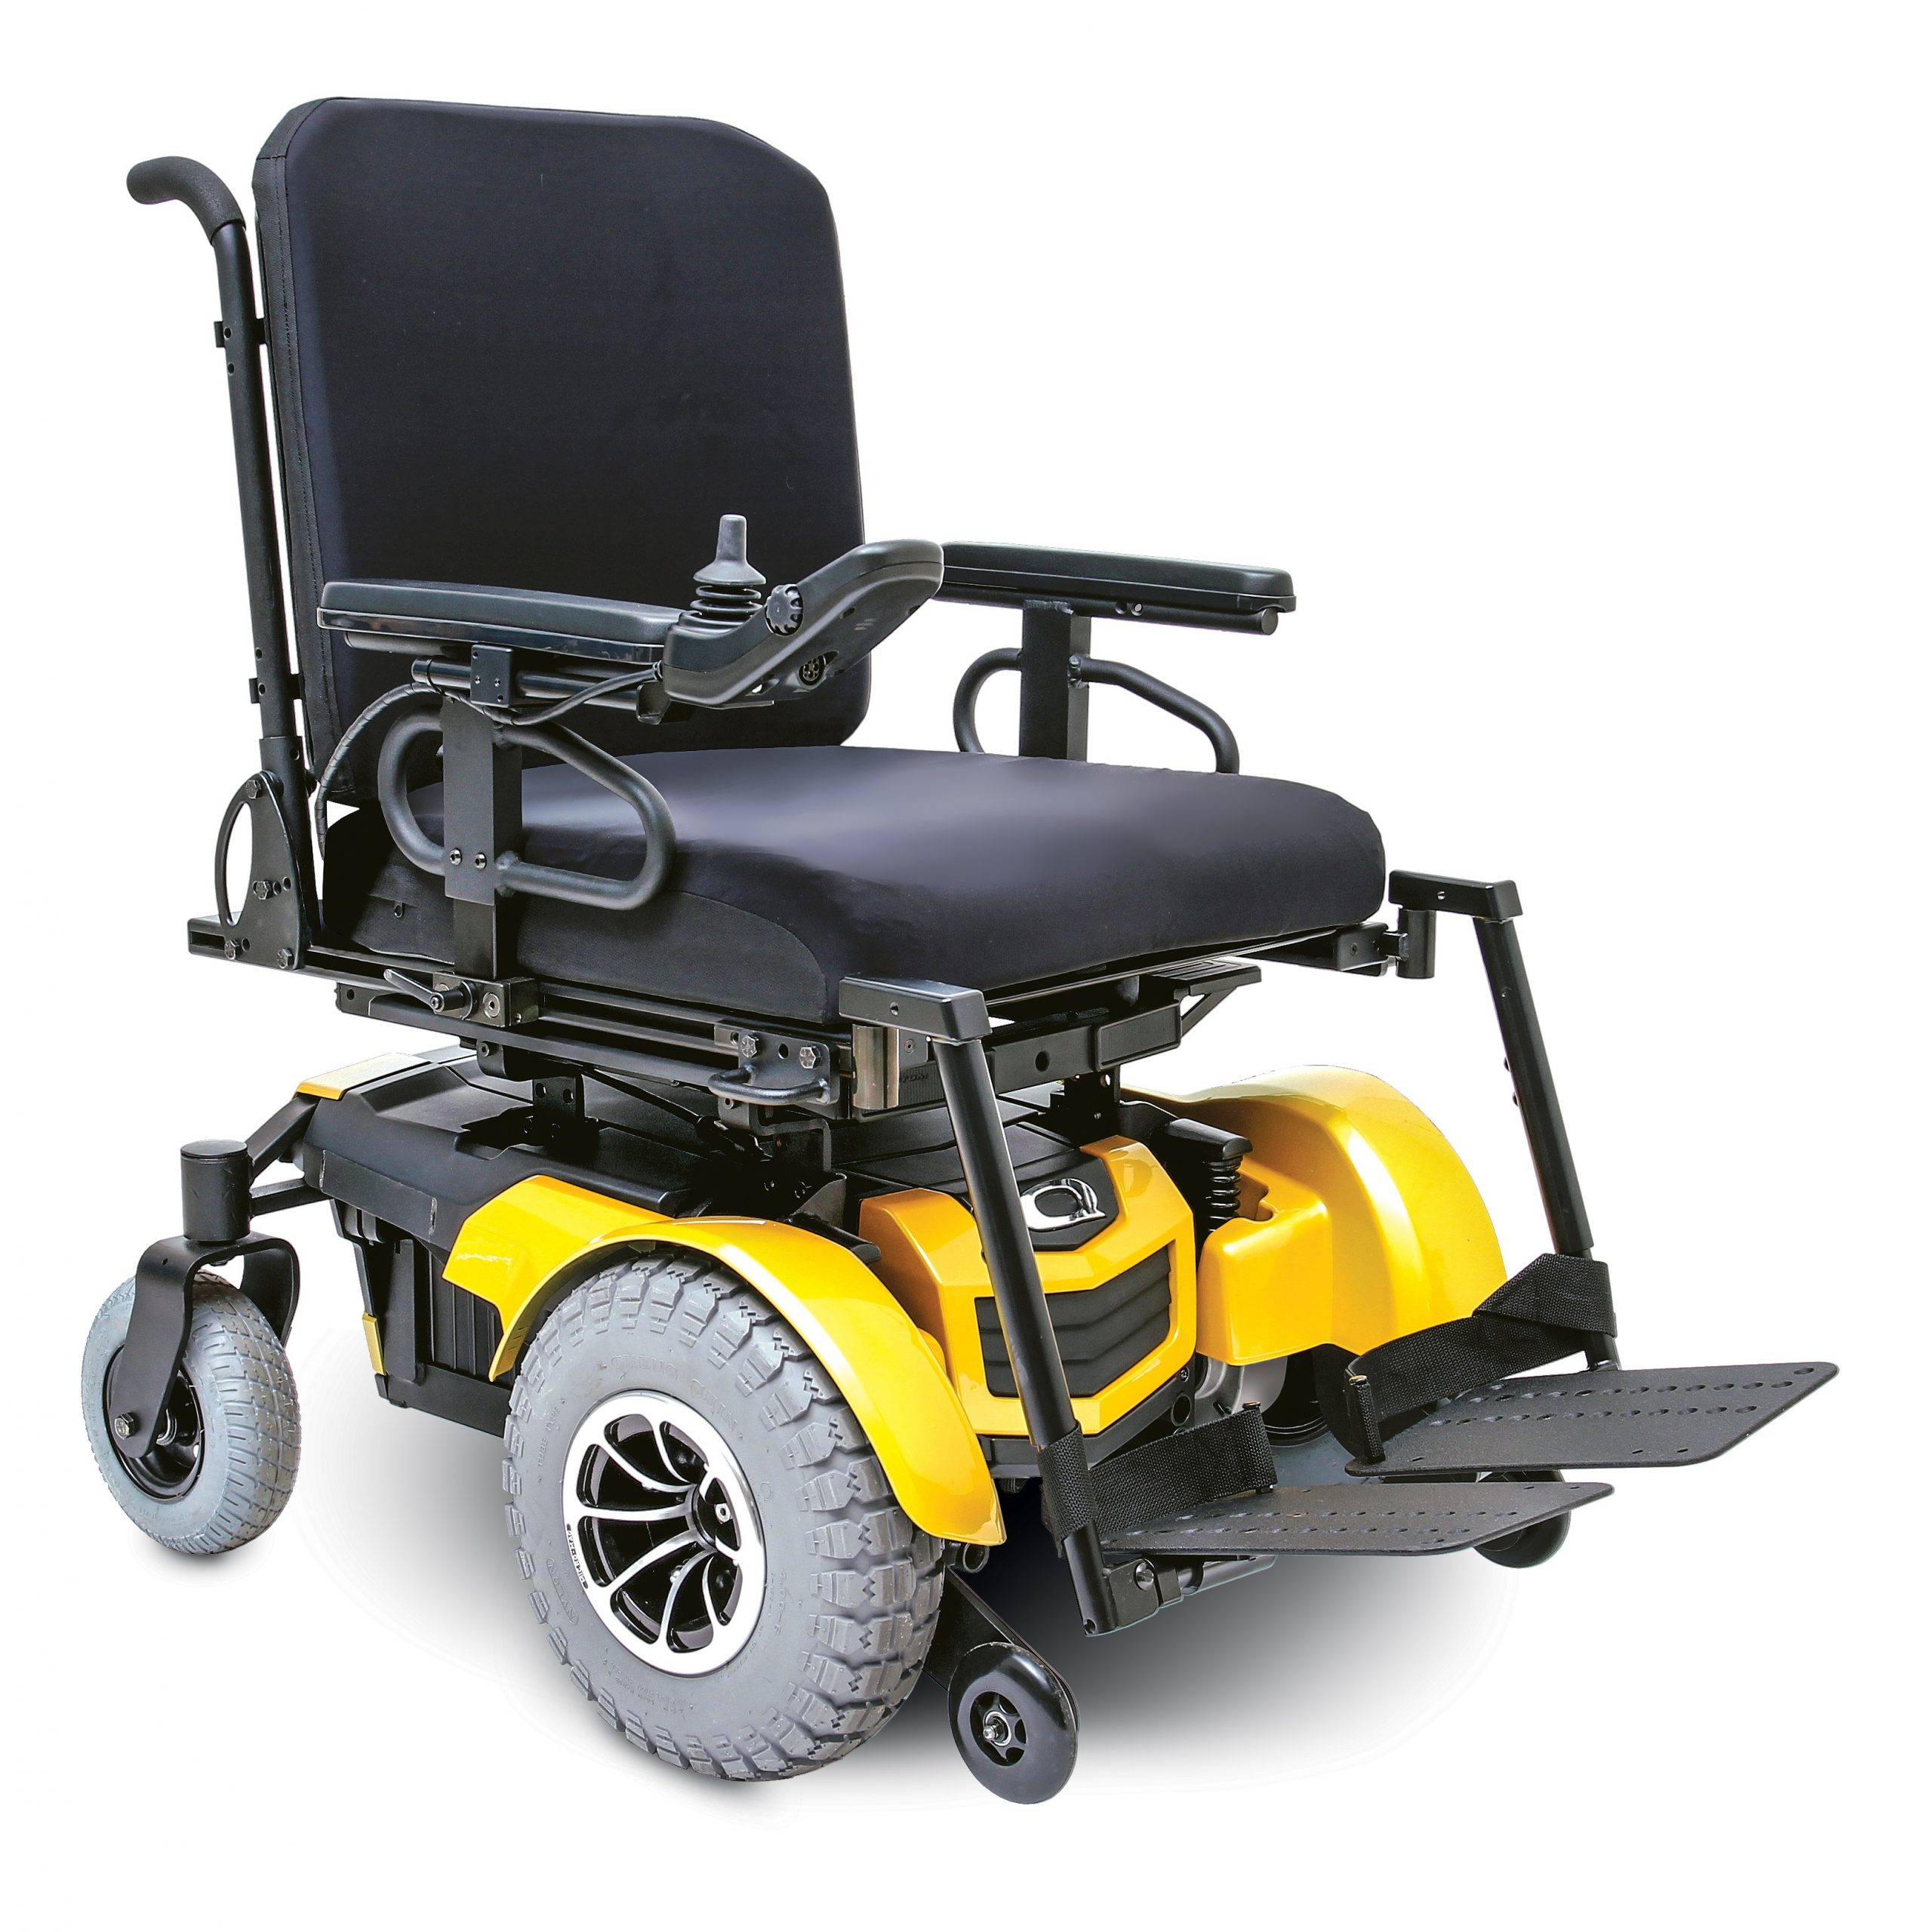 Quantum 1450 Power Wheelchair